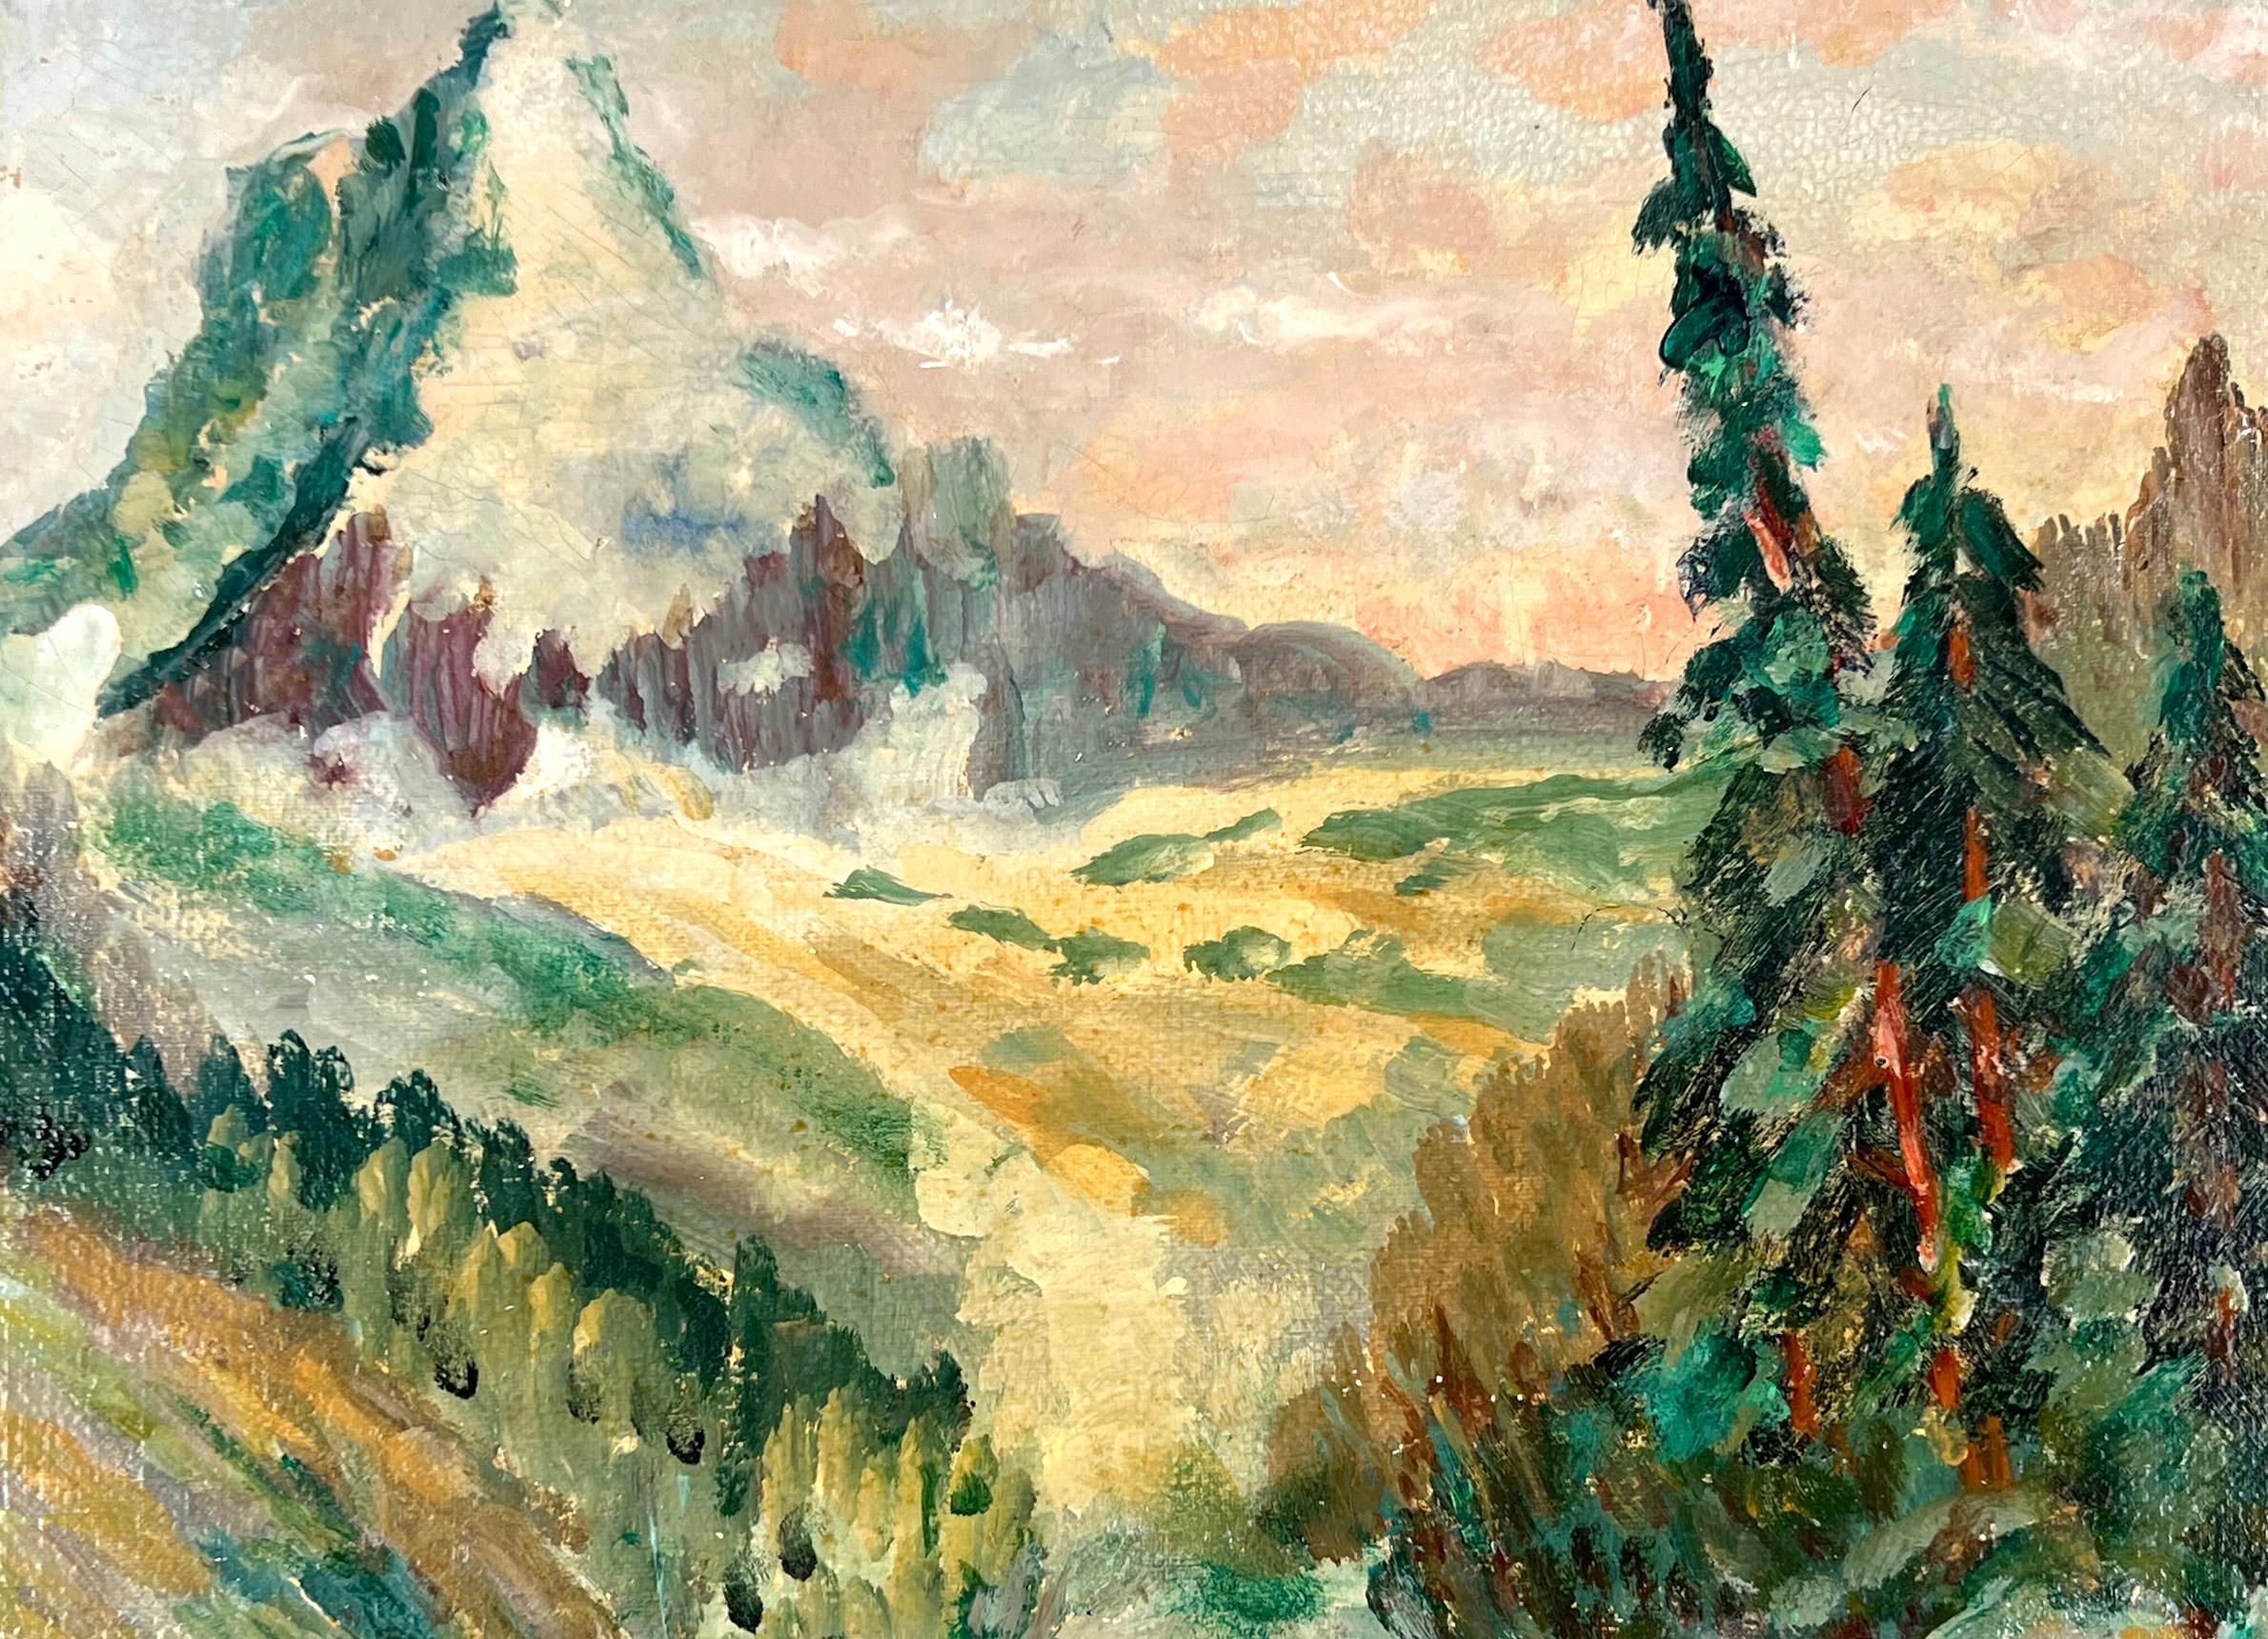 Sierra Peak California Mountain and Stream 1930er Jahre (Amerikanischer Impressionismus), Painting, von Aaron Roberts